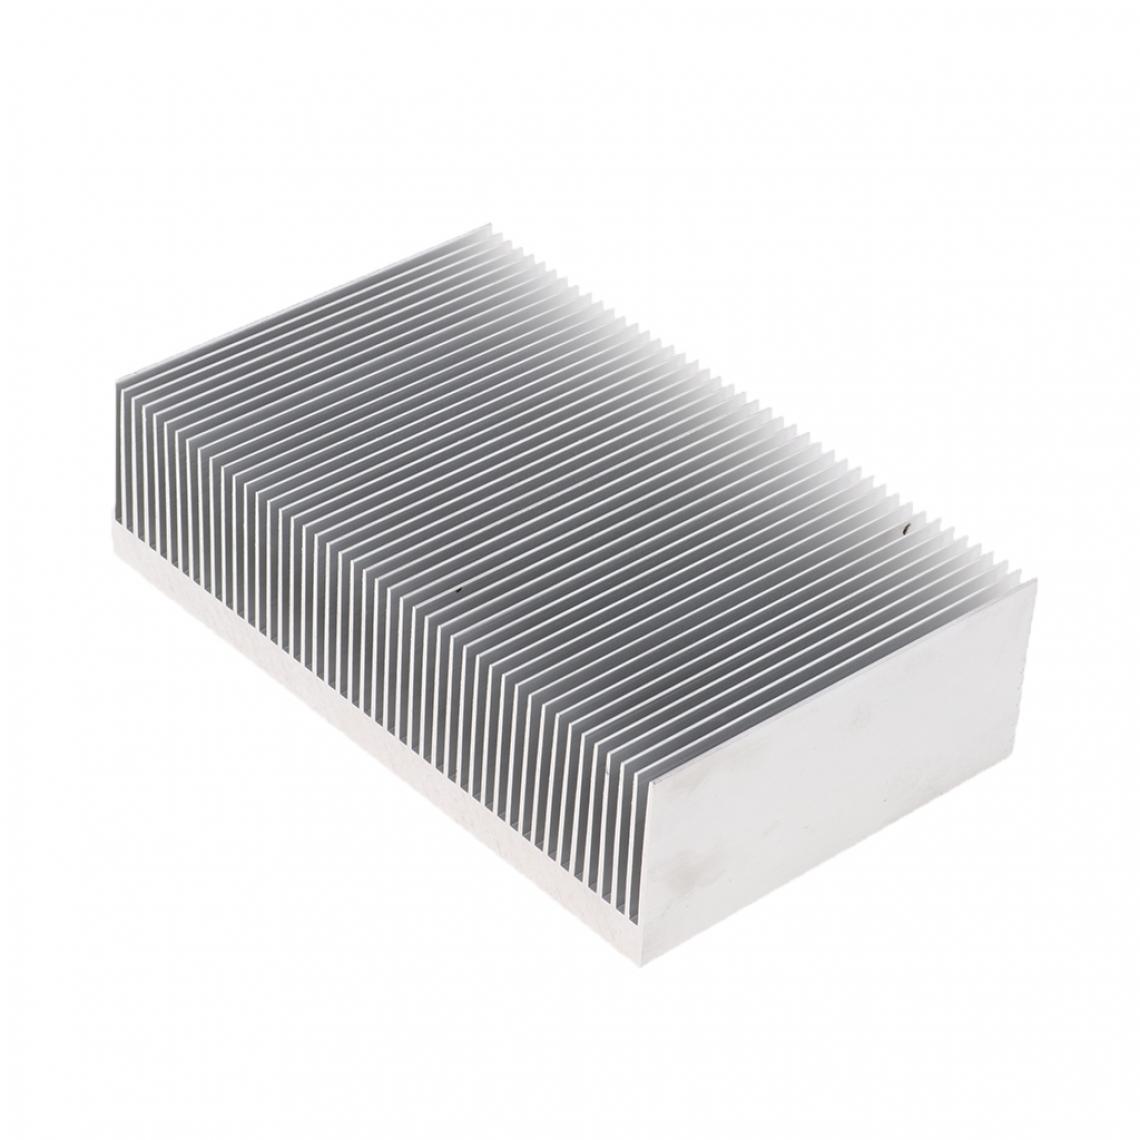 marque generique - Aileron Refroidissement Dissipateur de Chaleur Dissipateurs Thermiques en Aluminium - Grille ventilateur PC